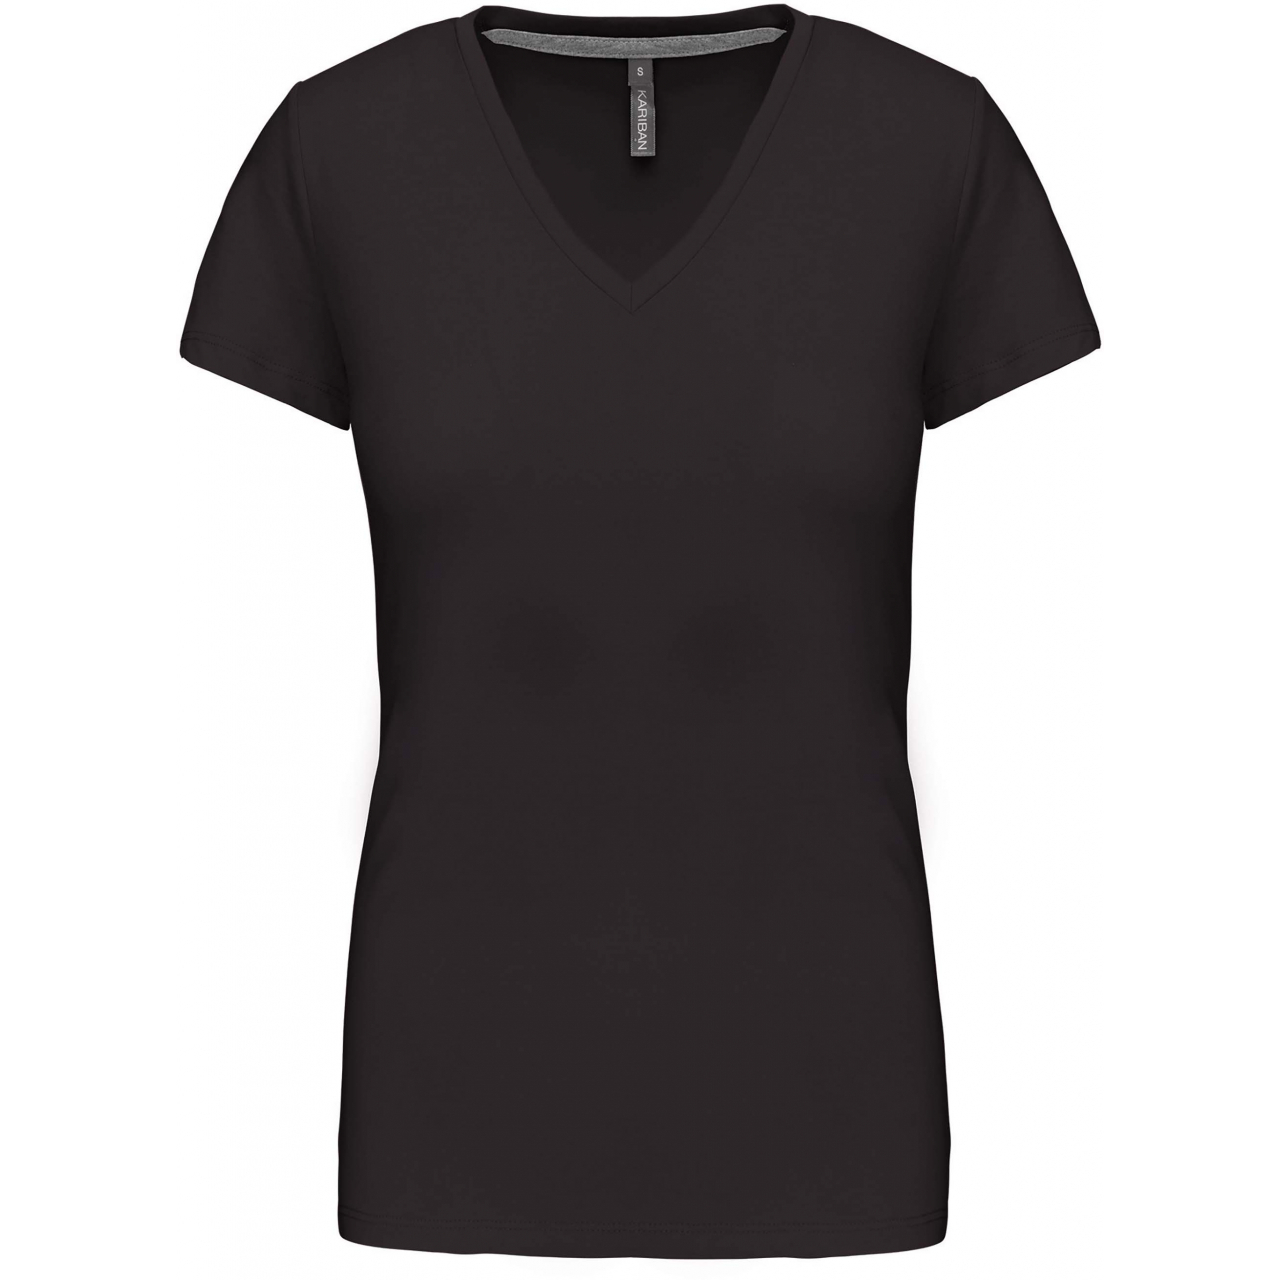 Dámské tričko Kariban V-neck s krátkým rukávem - tmavě šedé, XXL